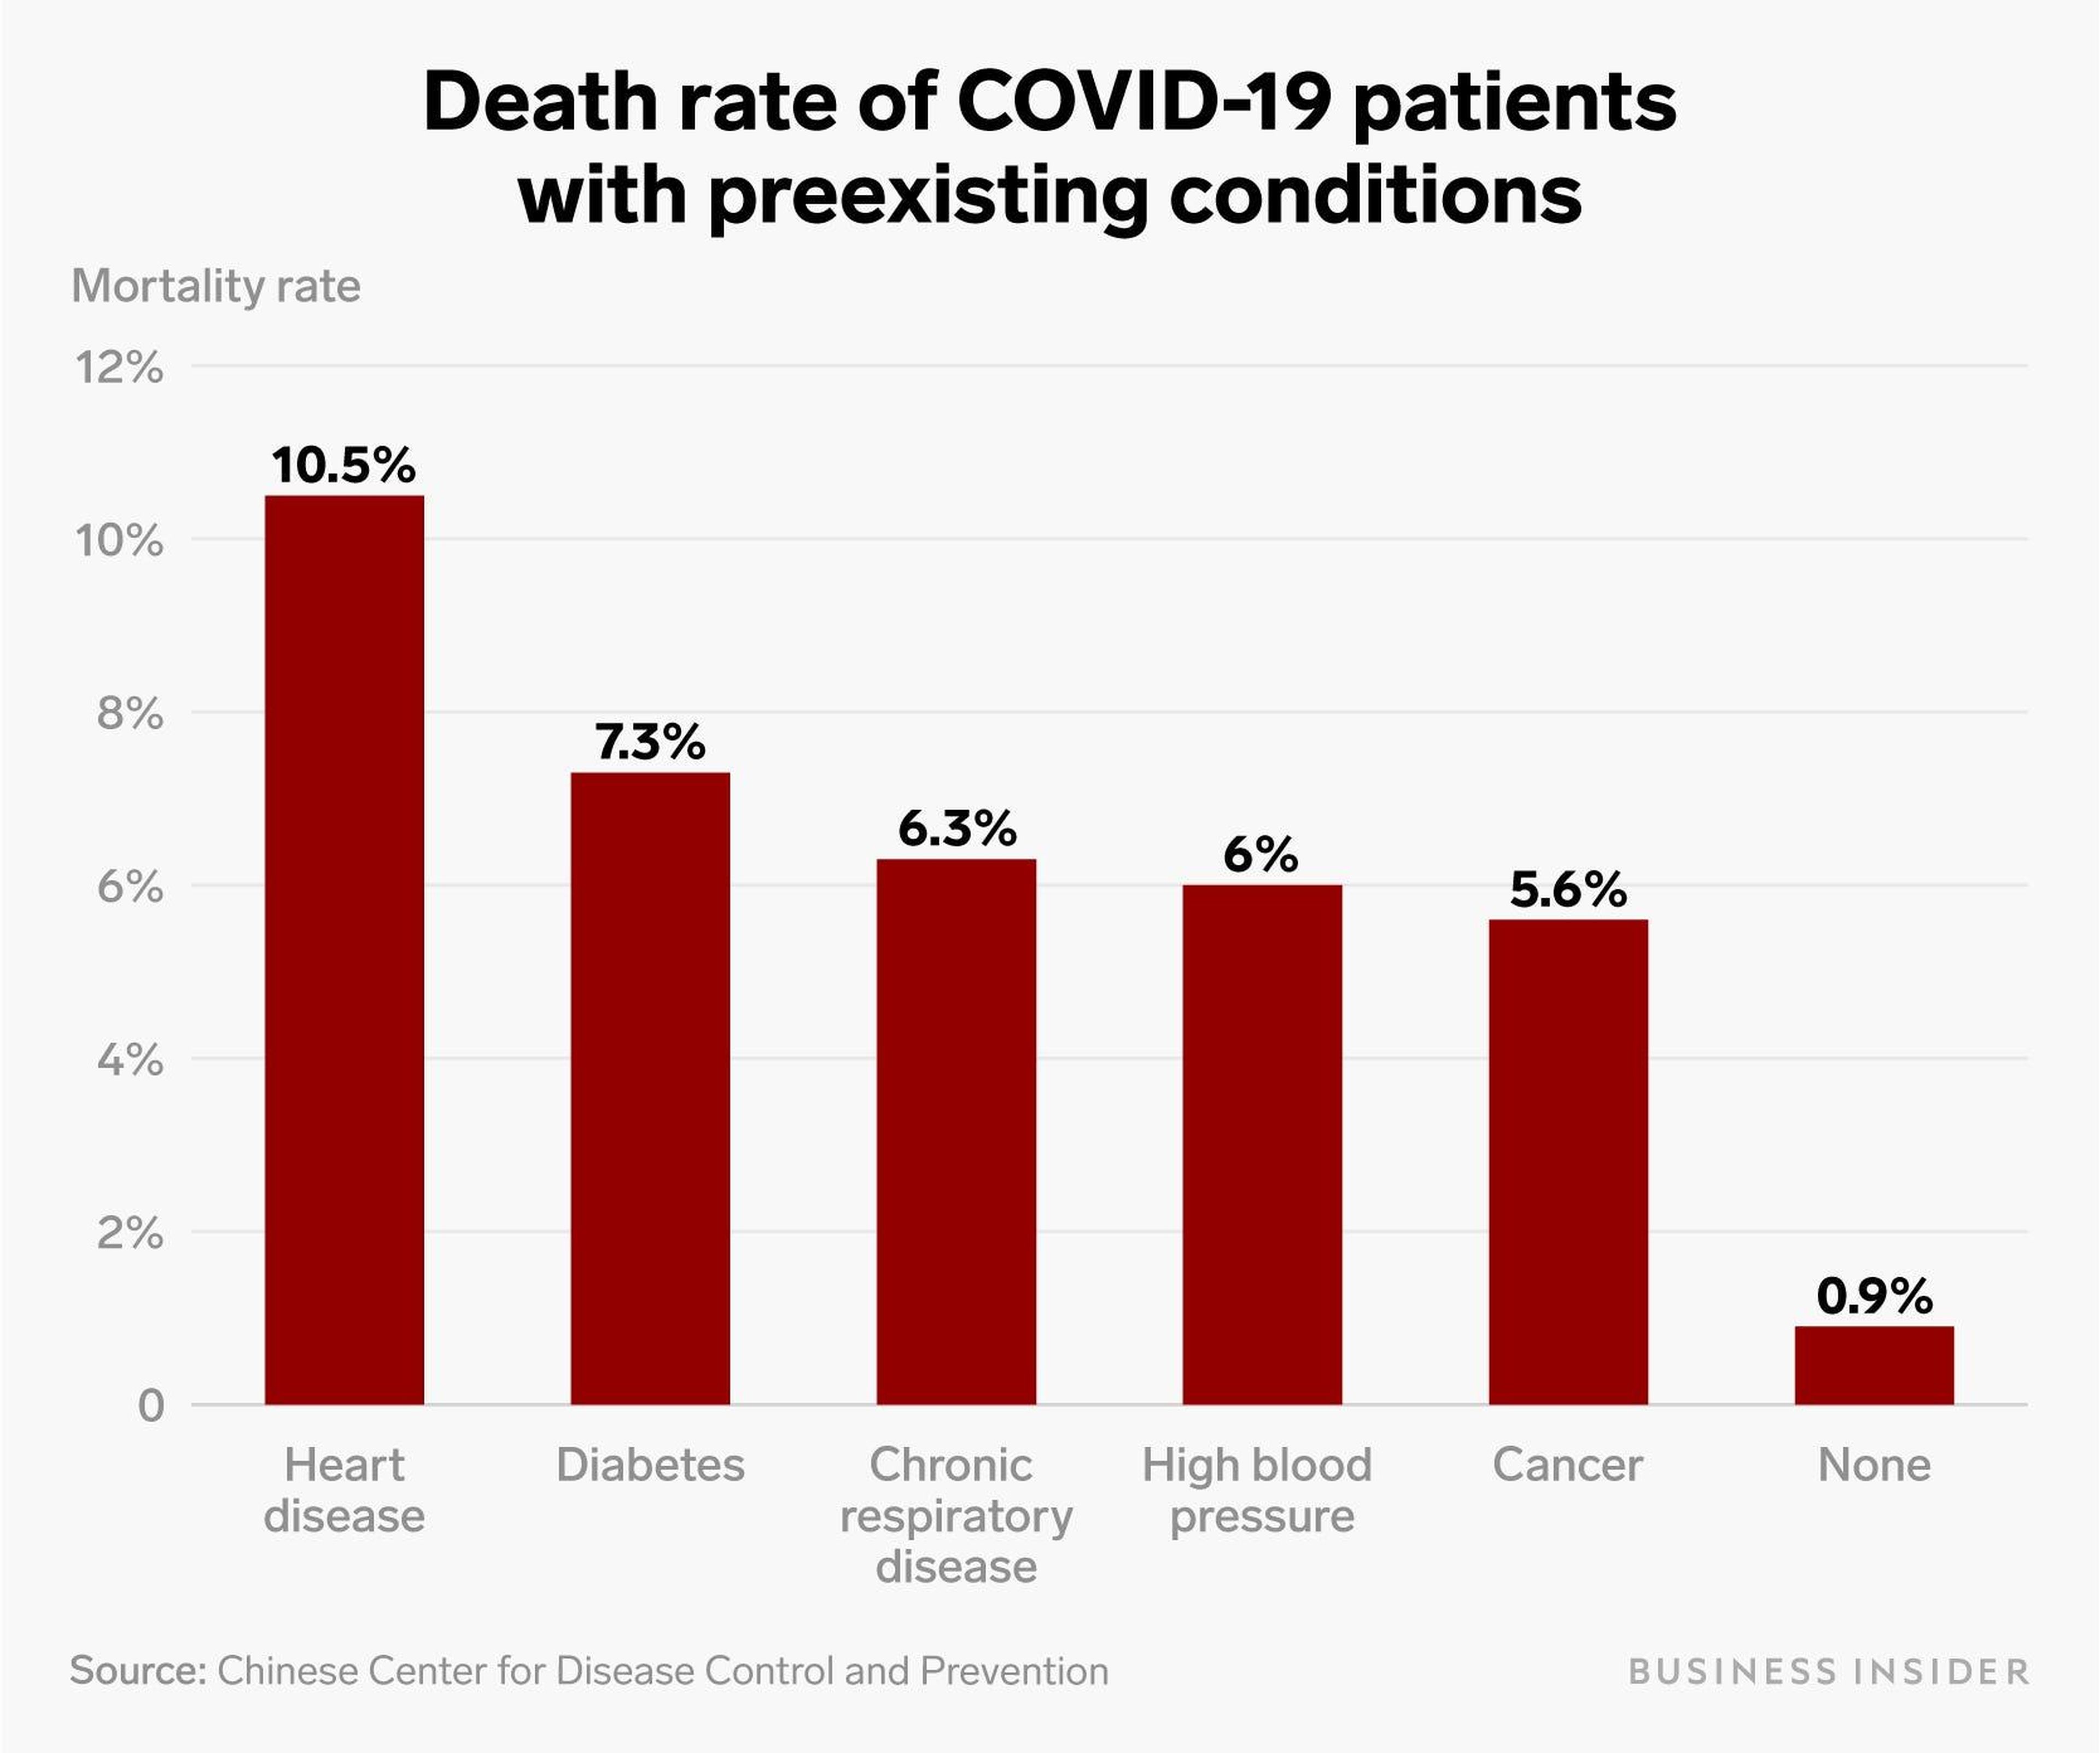 Los pacientes con coronavirus que padecen enfermedades cardíacas tienen un 10% de probabilidades de morir. Aquí está la tasa de mortalidad de los pacientes con varios problemas de salud subyacentes.